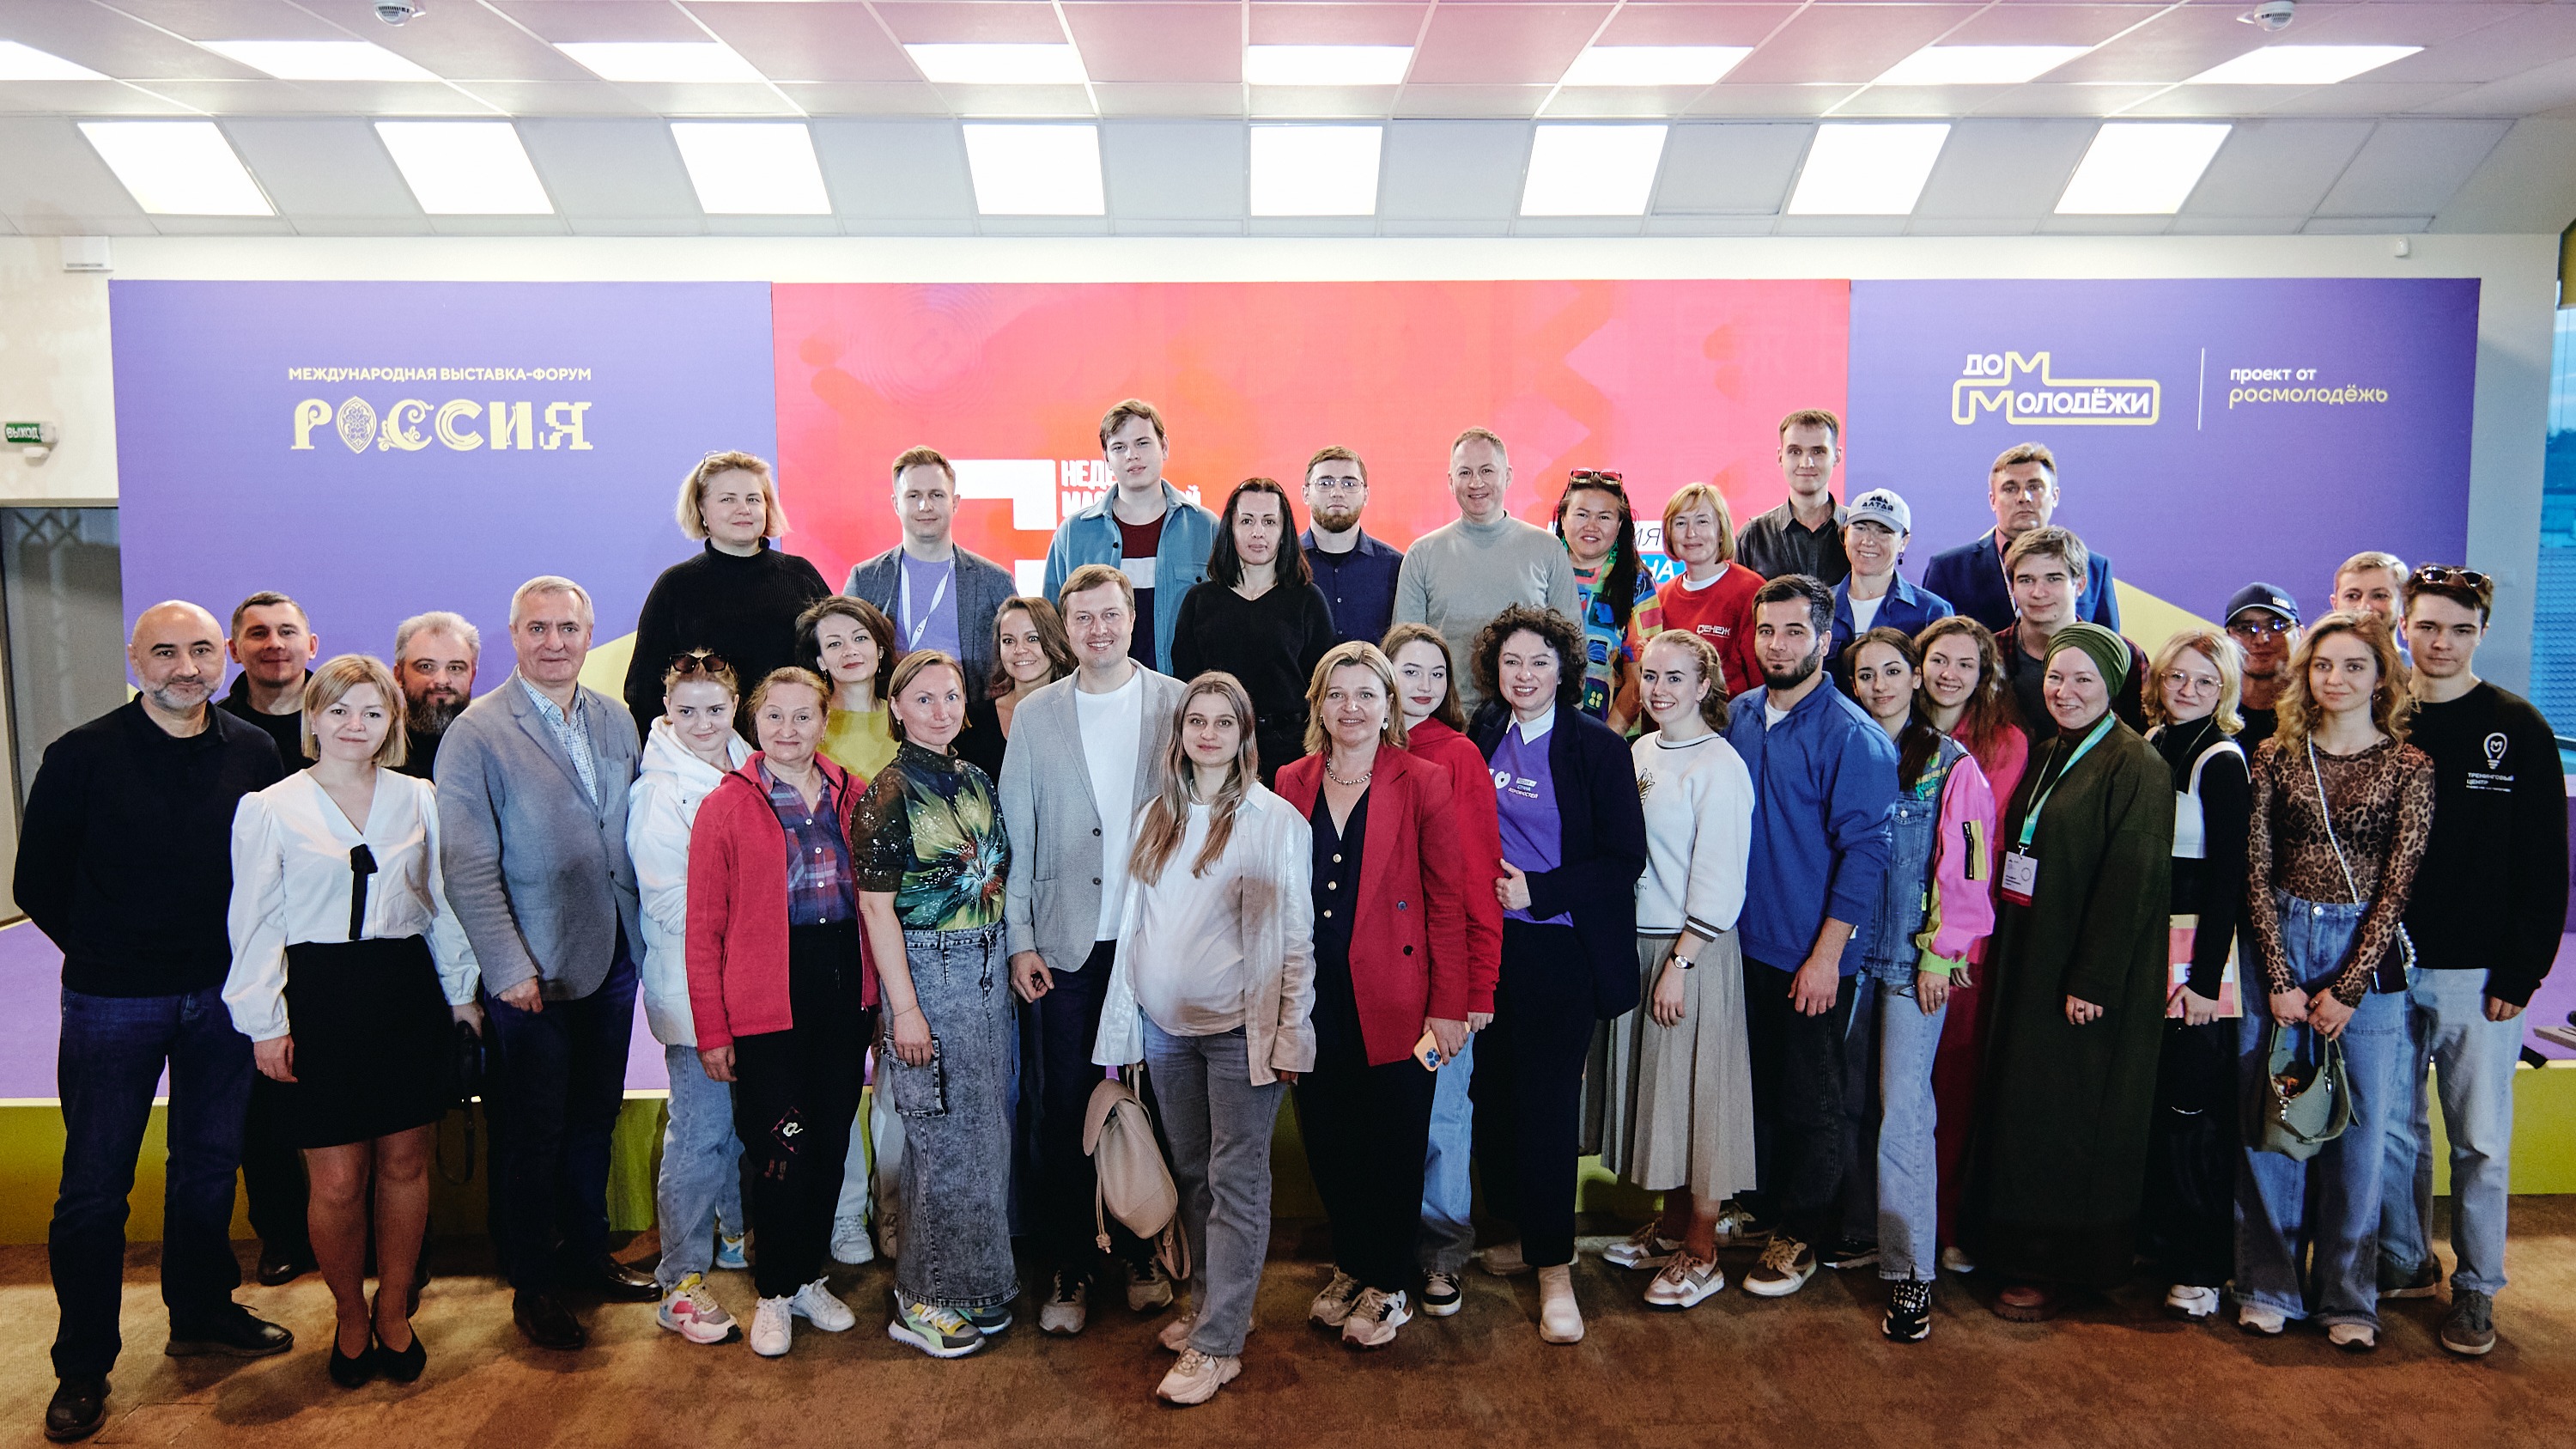 Мастерская управления «Сенеж» провела неделю открытых образовательных мероприятий на площадке выставки-форума «Россия»